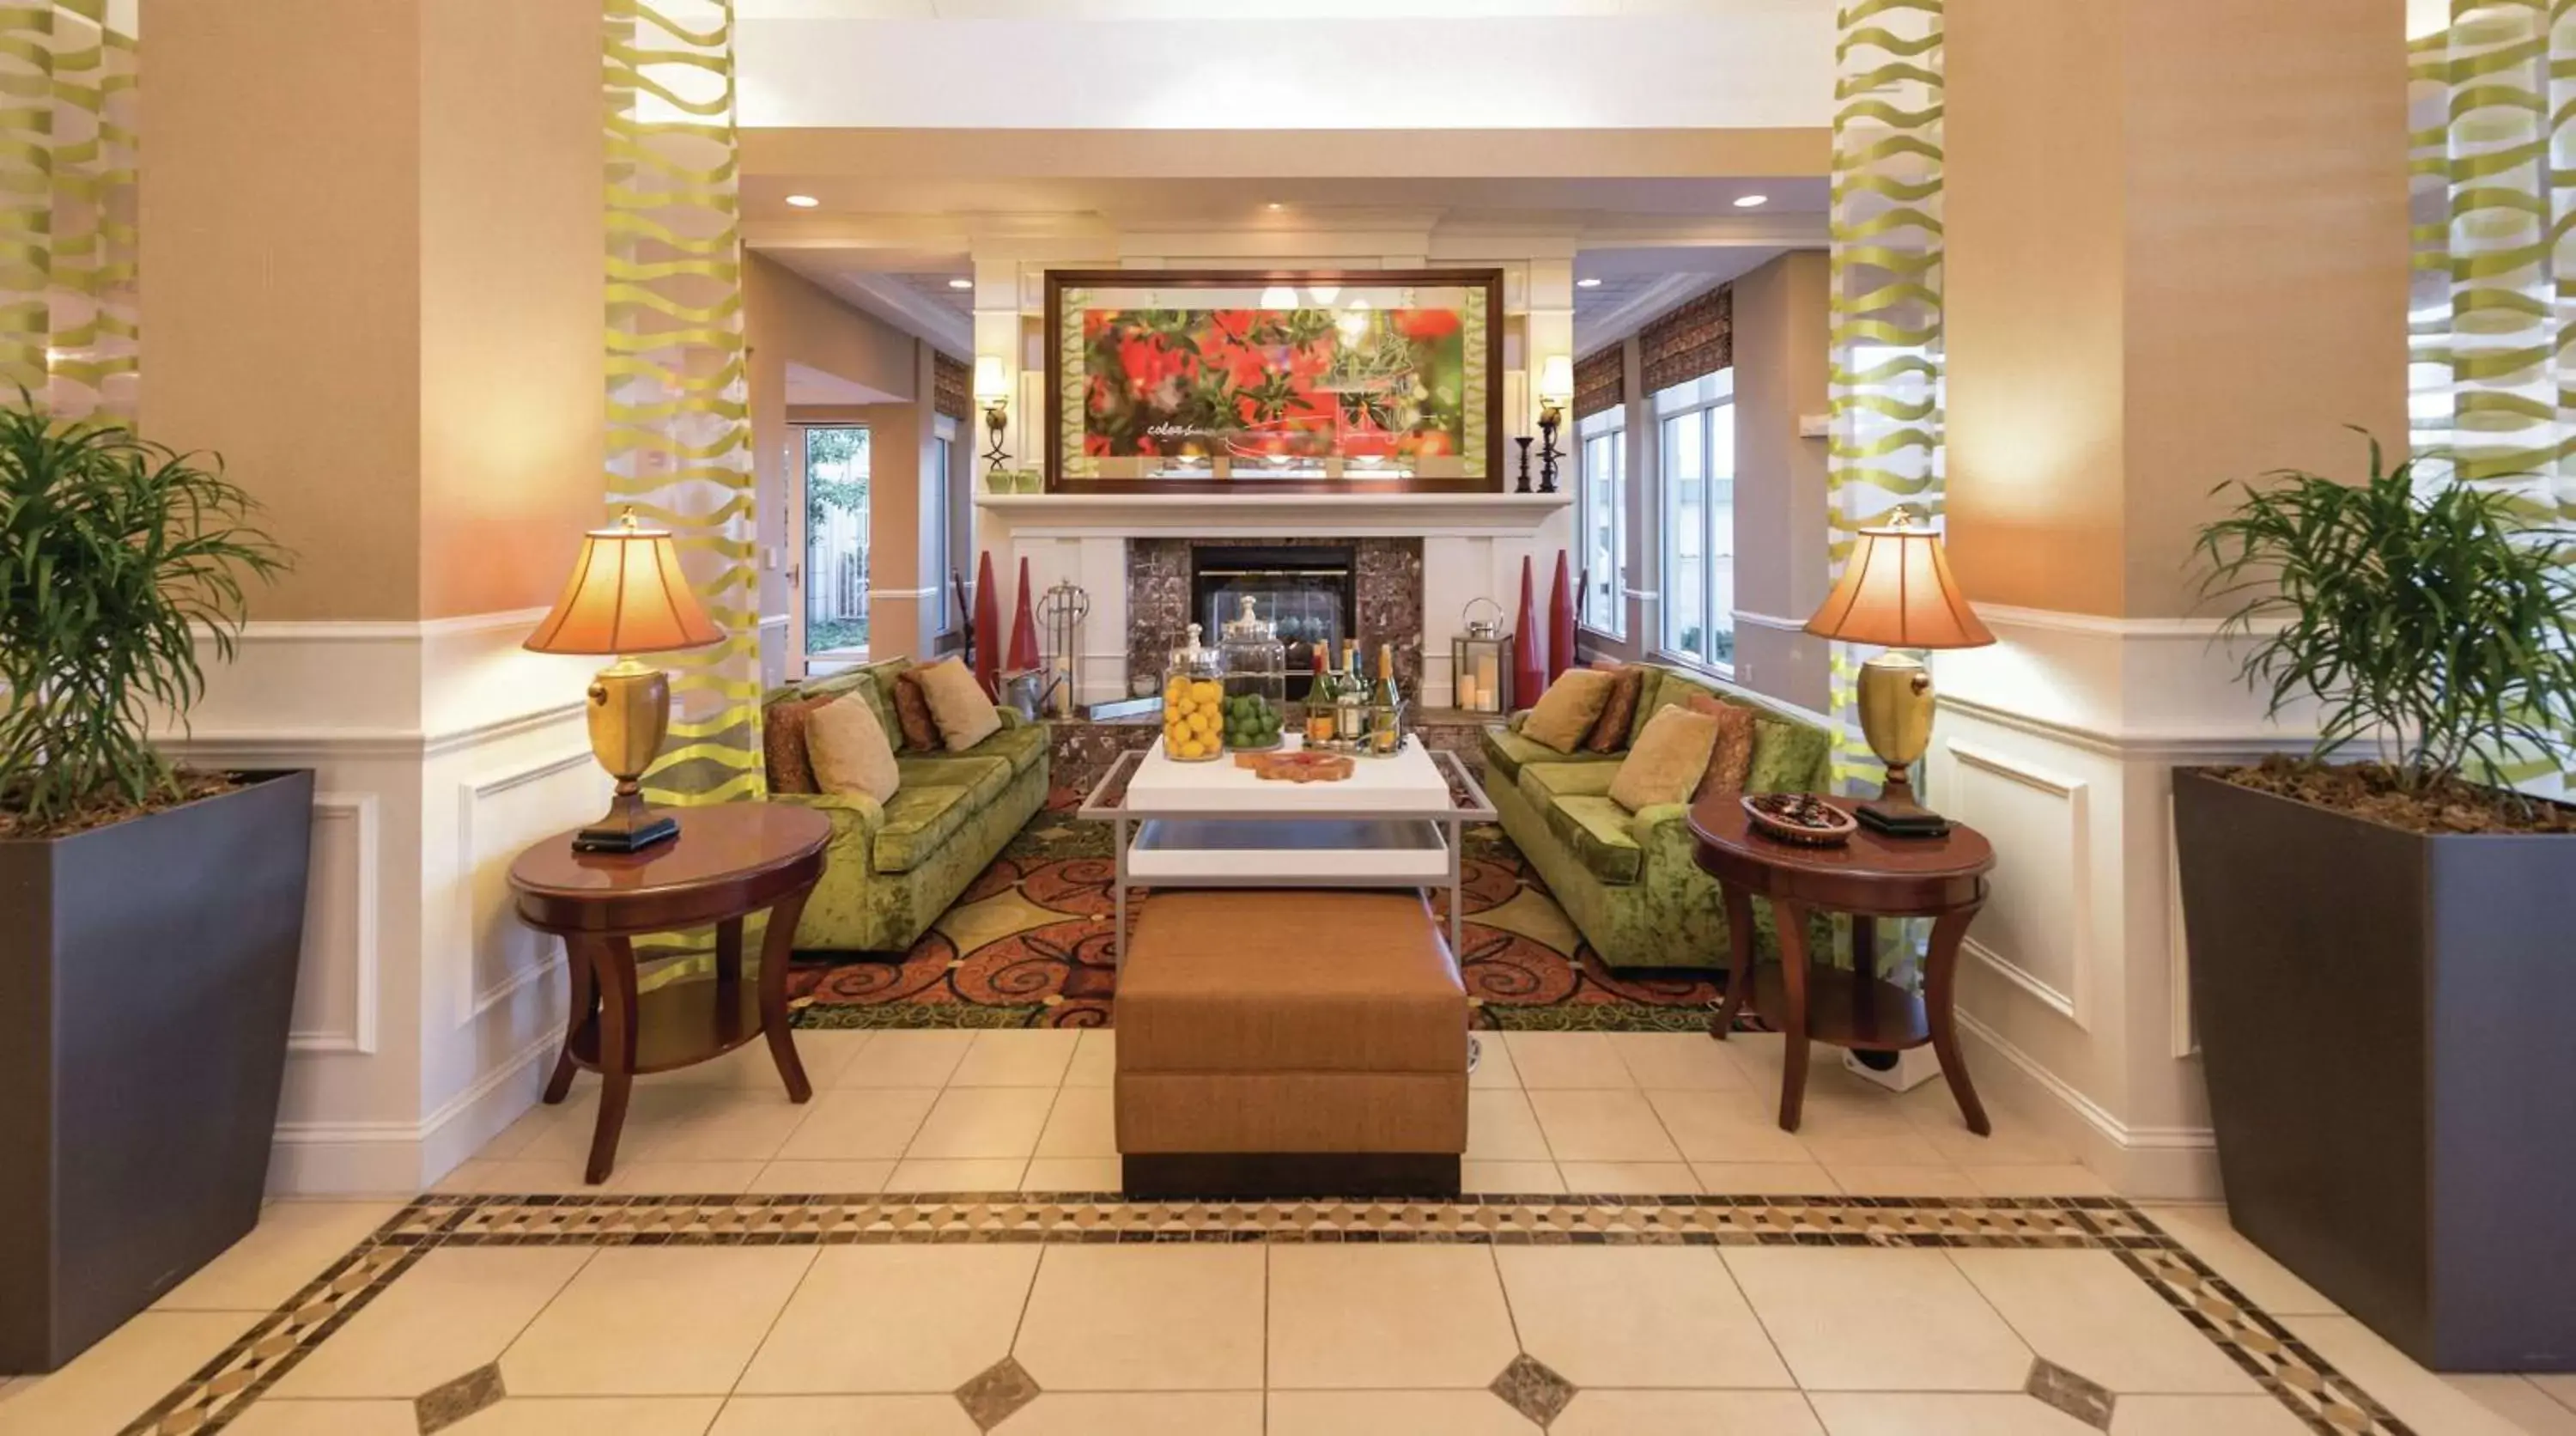 Lobby or reception, Lobby/Reception in Hilton Garden Inn Meridian